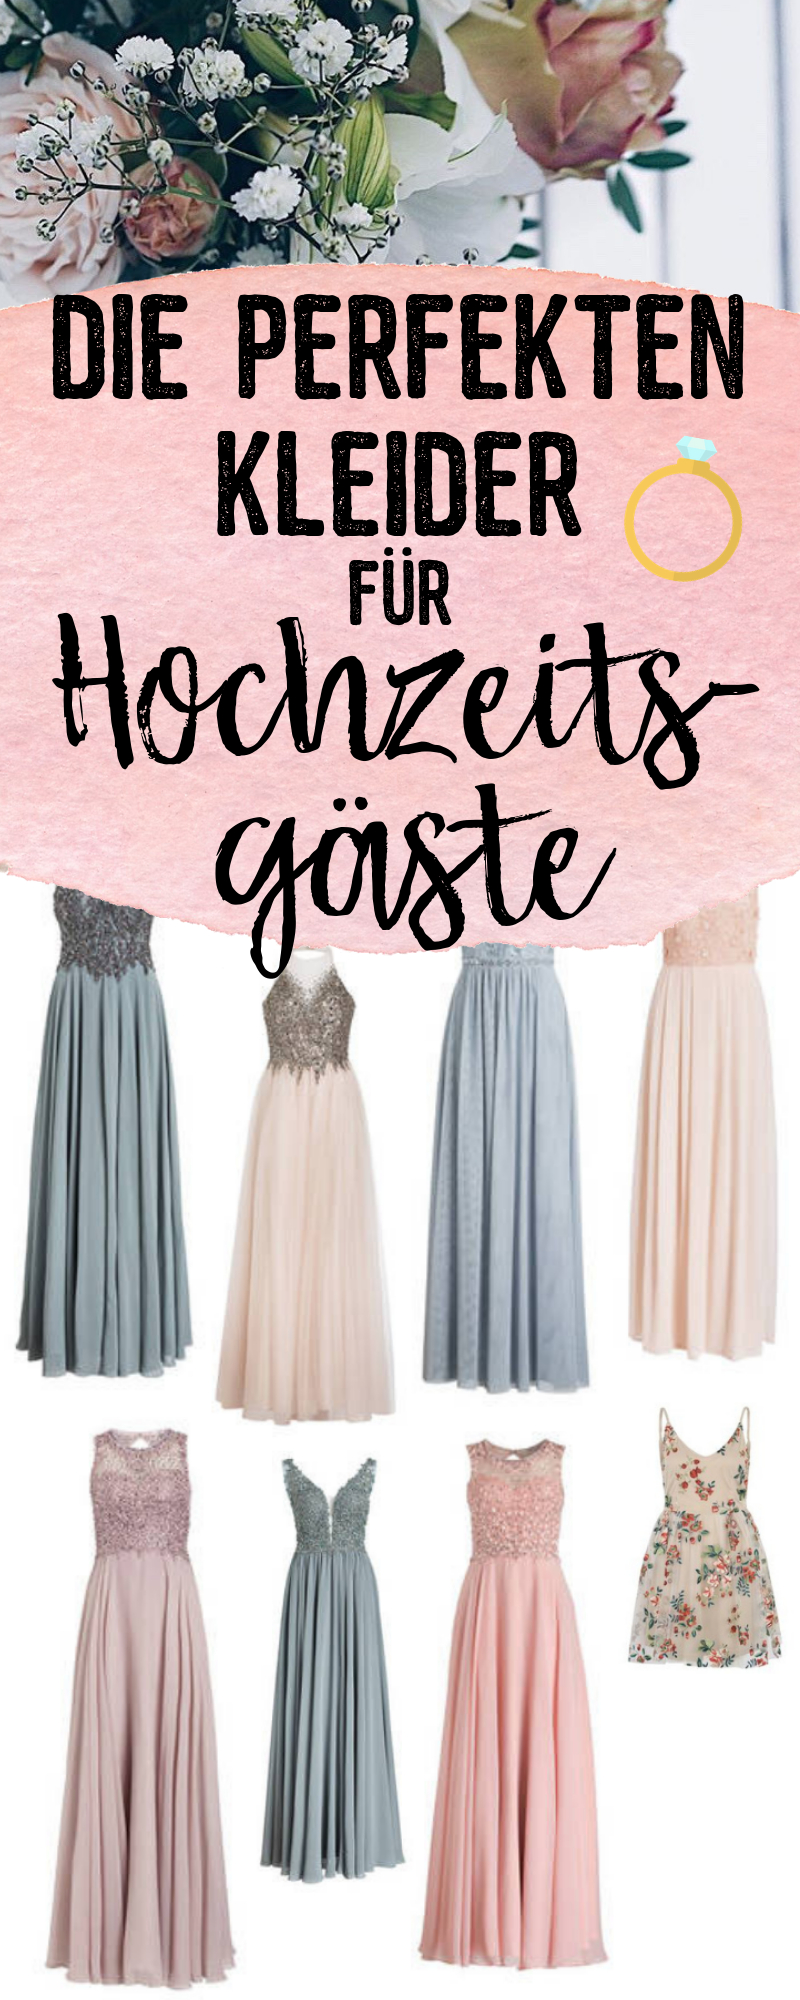 20 Ausgezeichnet Bunte Kleider Für Hochzeit BoutiqueAbend Coolste Bunte Kleider Für Hochzeit Design